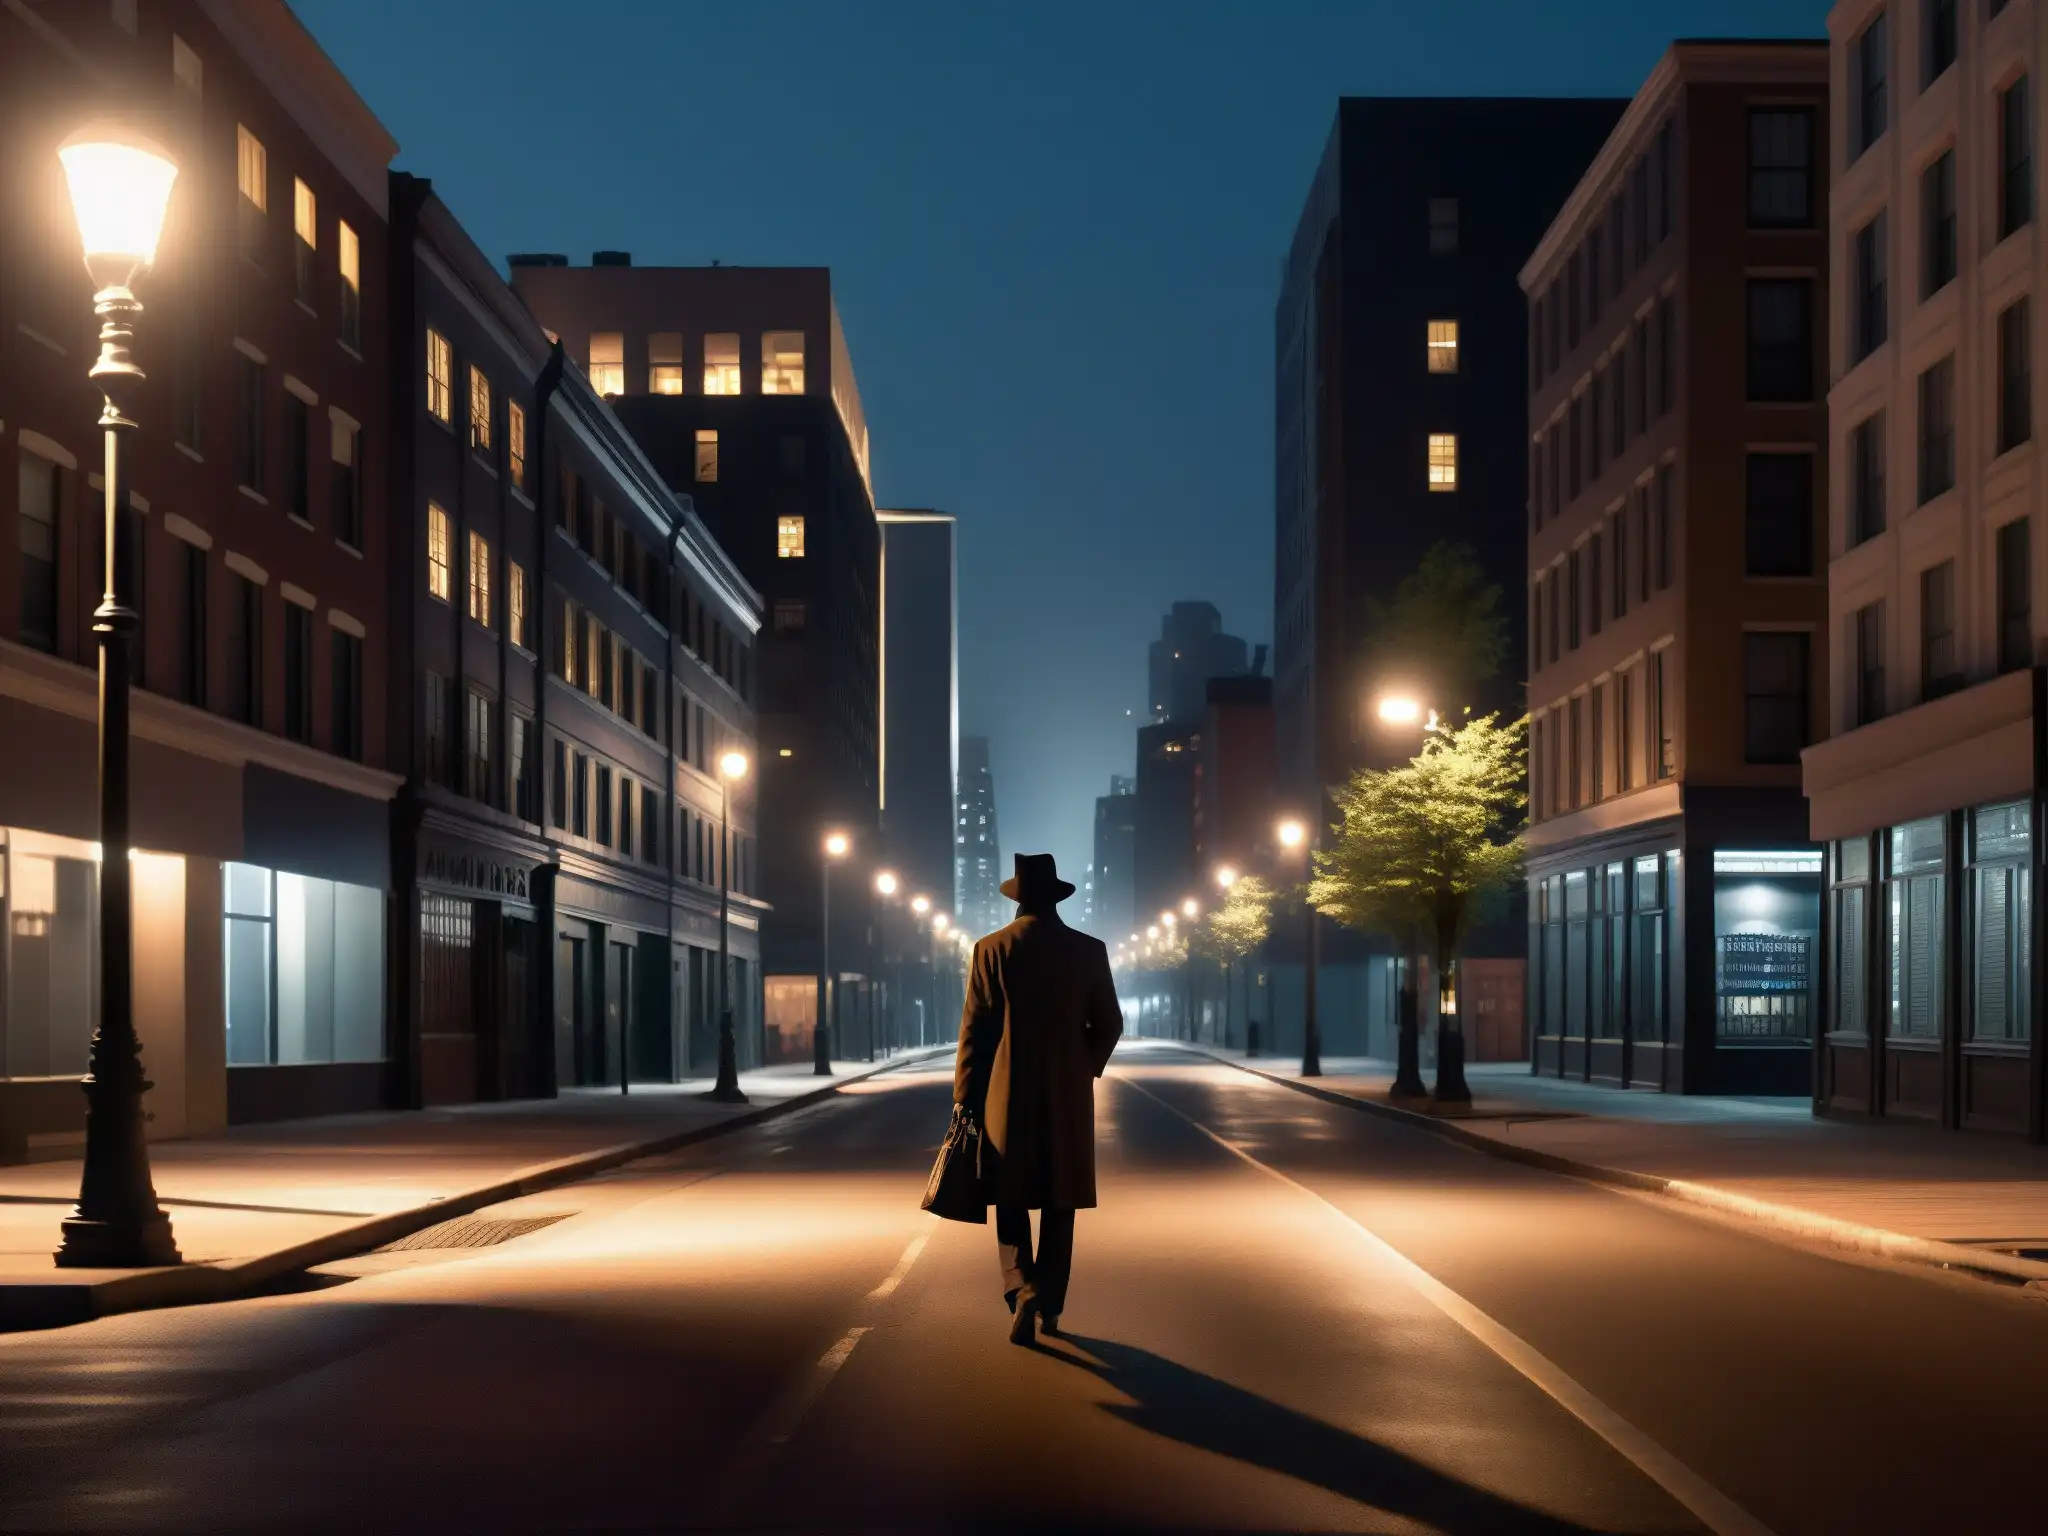 Psicoanálisis de leyendas urbanas miedo: Una figura solitaria camina por una calle de la ciudad oscura, entre edificios altos y sombras alargadas